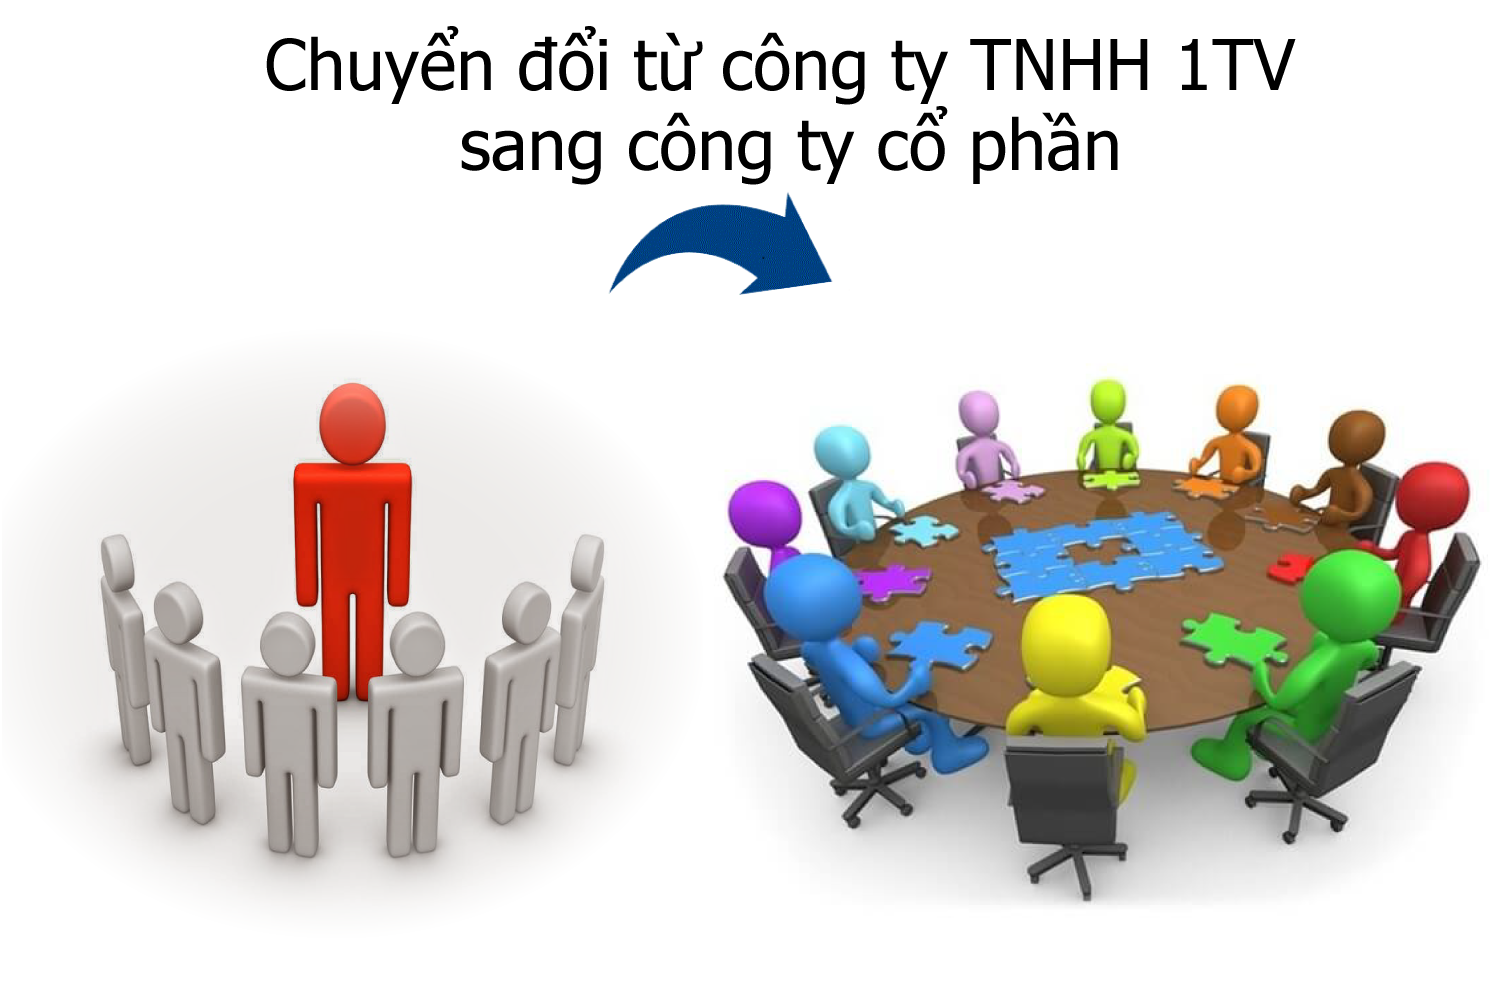 chuyen-doi-tu-cong-ty-TNHH-1TV-sang-cong-ty-co-phan.png